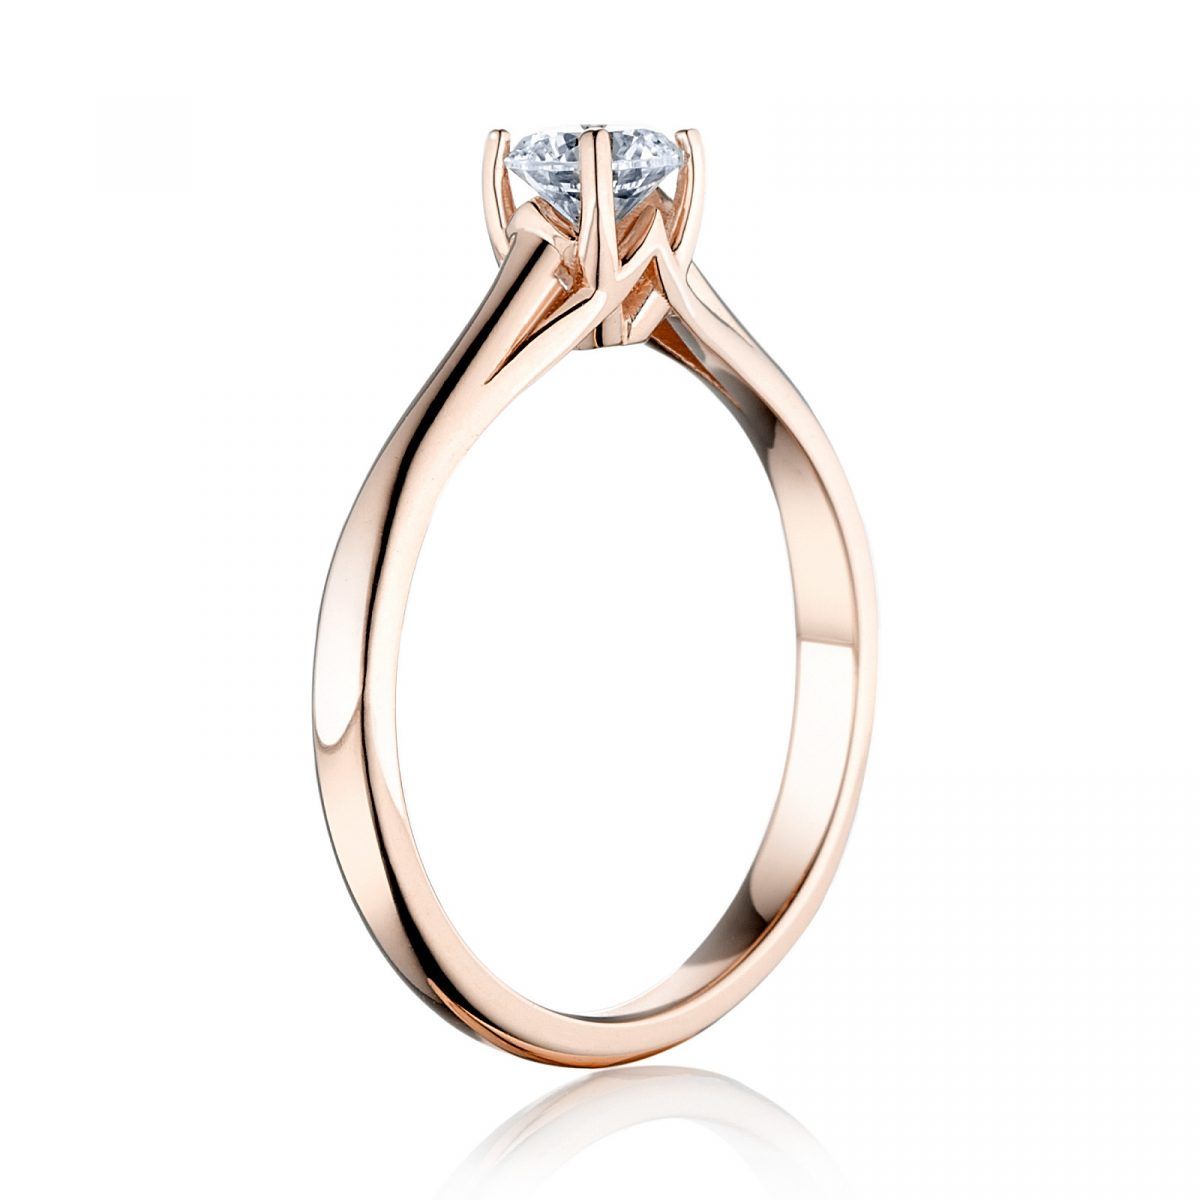 Prsteň Michelle -ružové zlato s prírodným diamantom